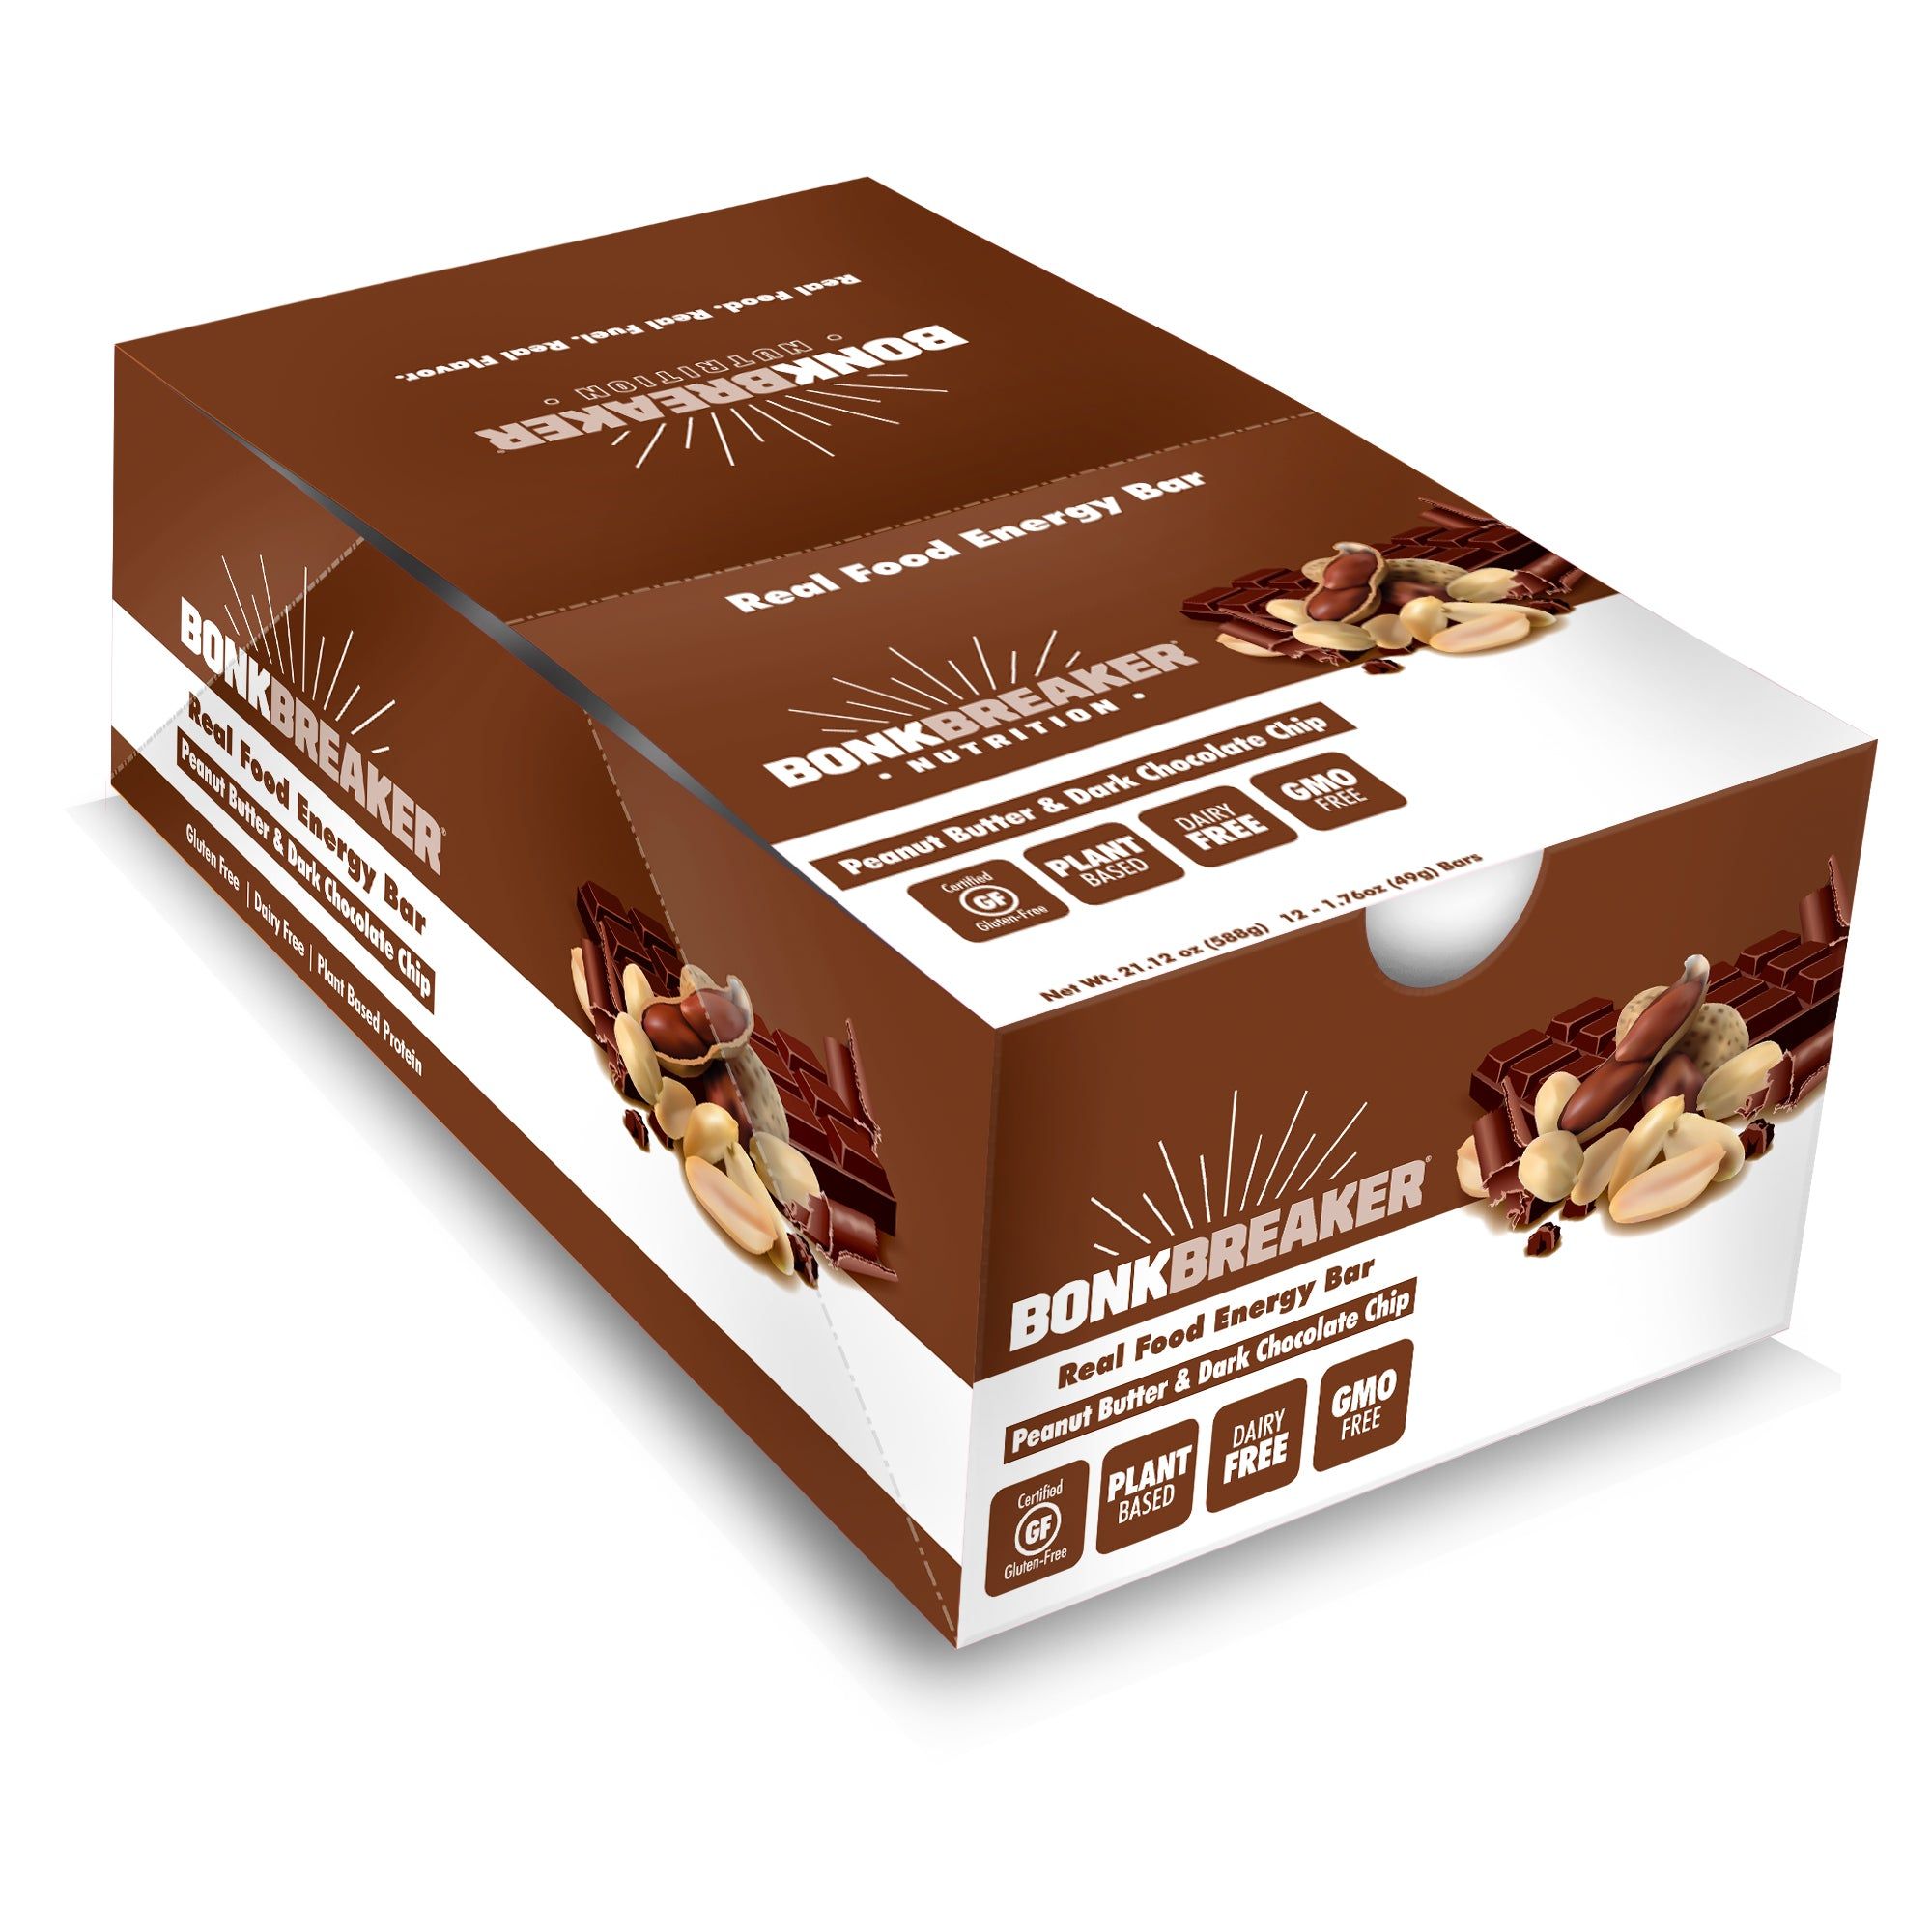 Bonk Breaker Energibar Peanut Butter & Chocolate Chip (12x49g) - DATOVARE